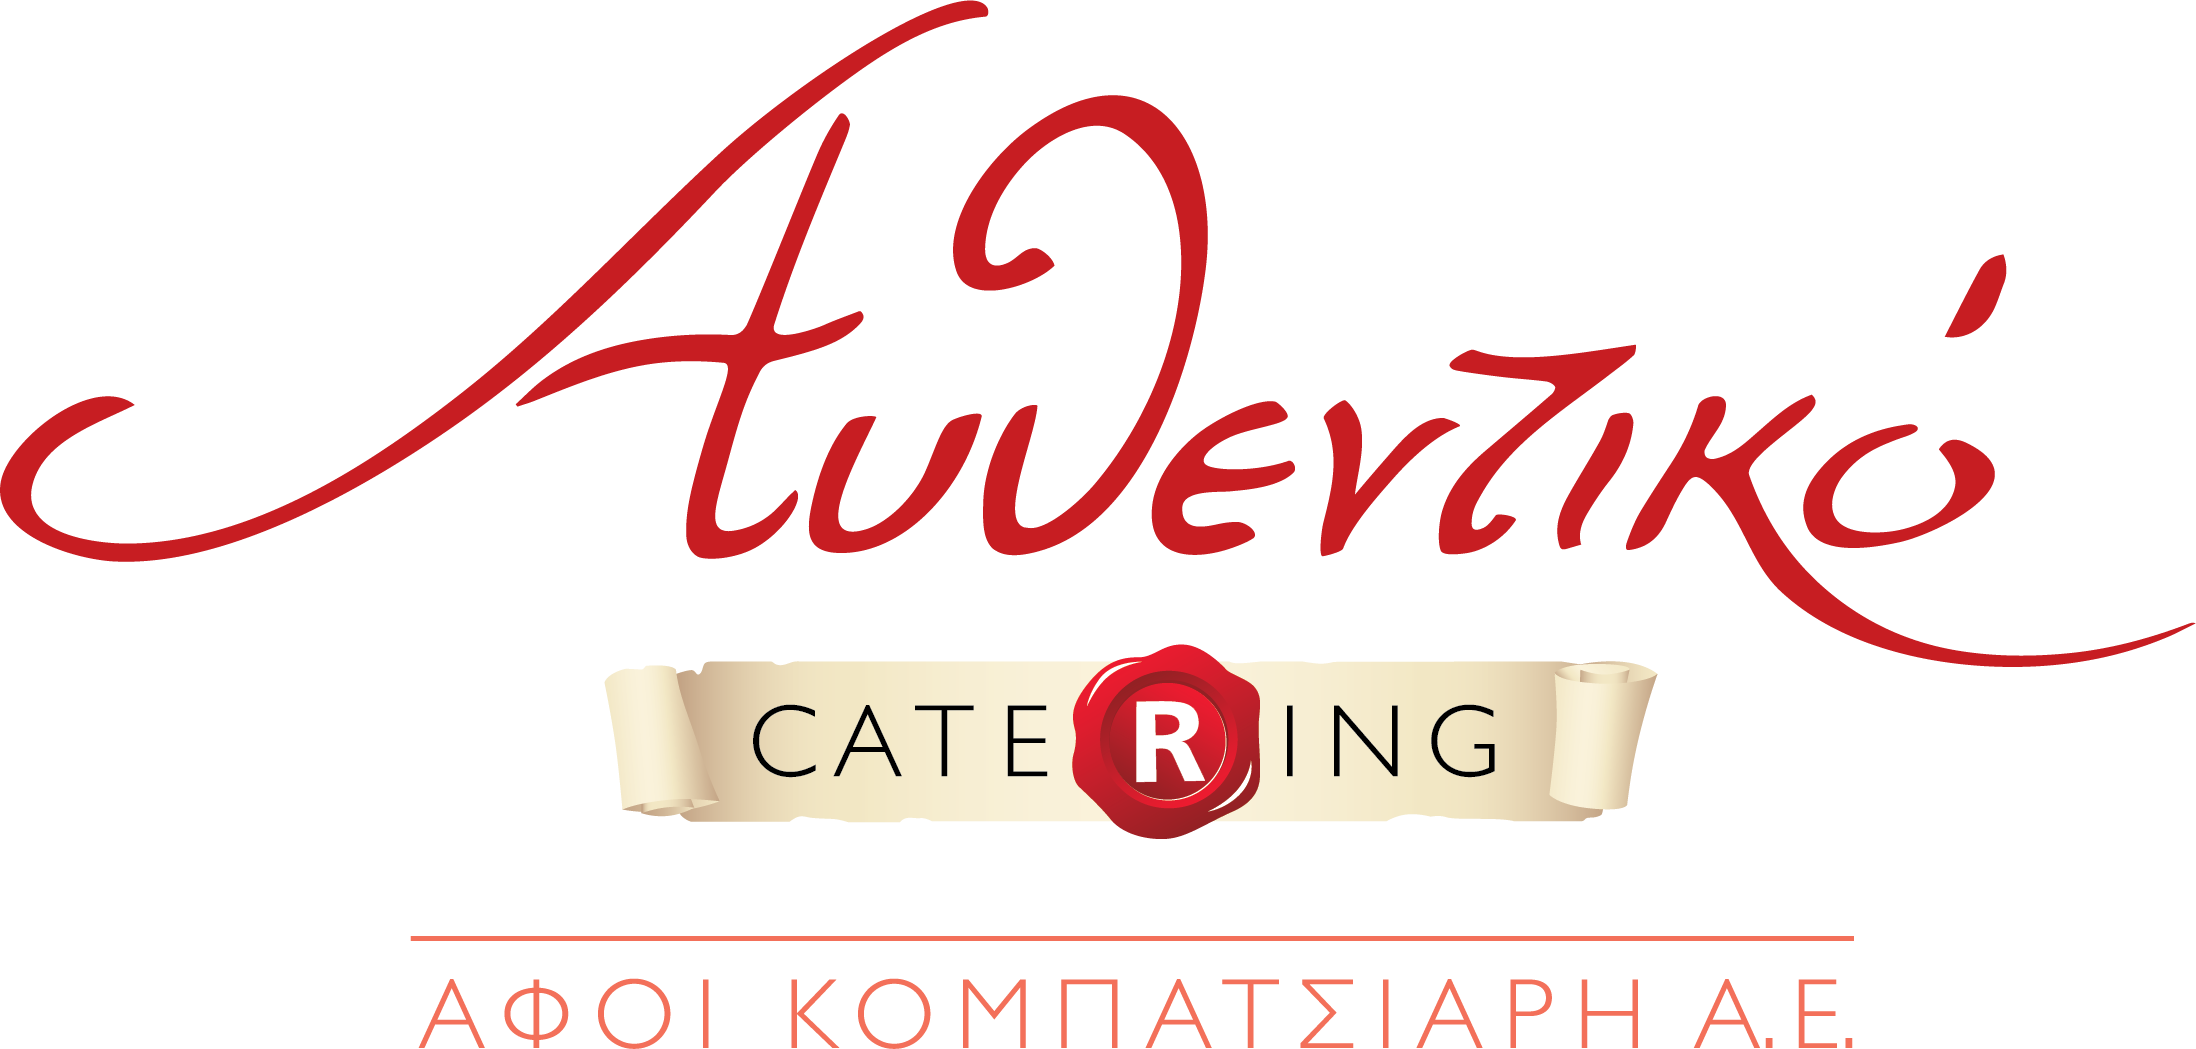 authentiko catering logo